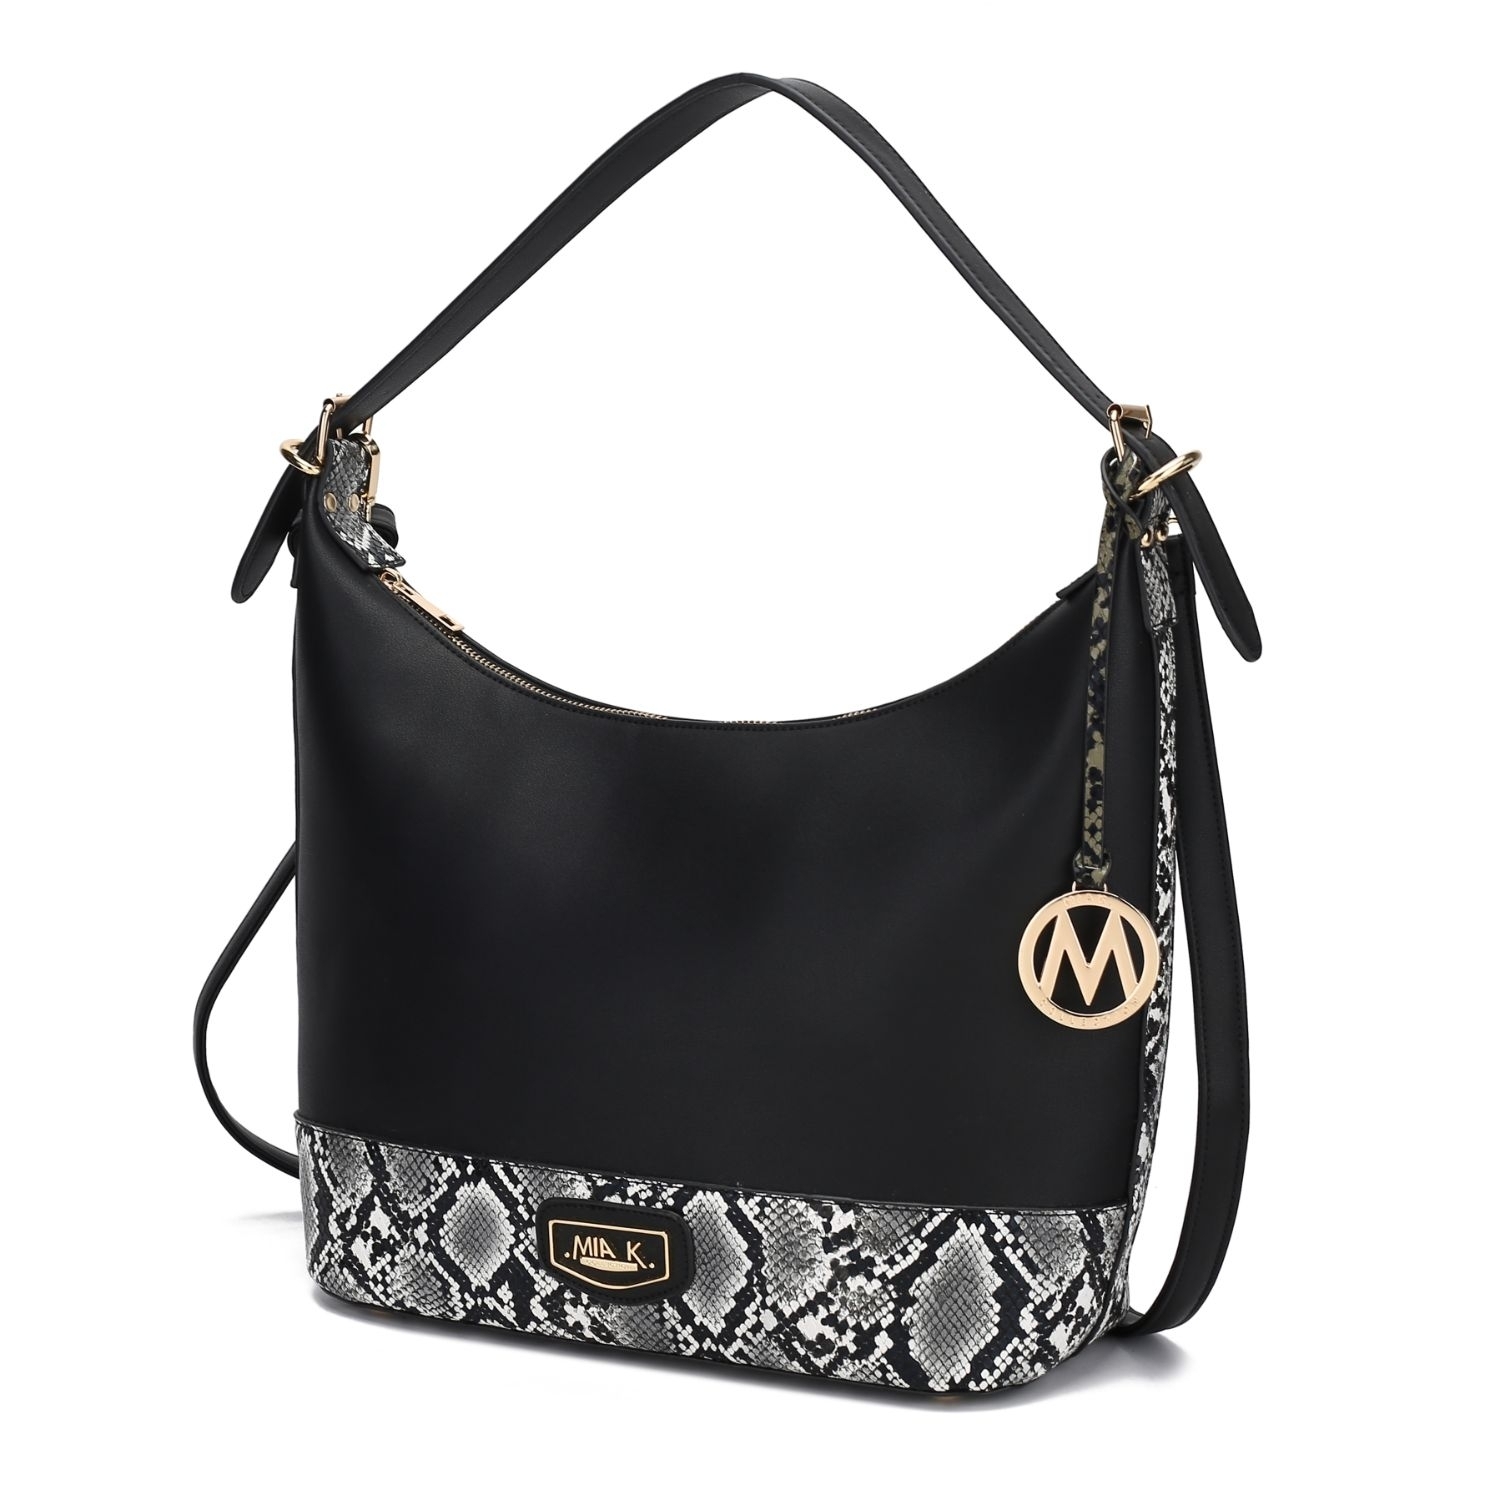 MKF Collection Diana Shoulder Handbag By Mia K. - Black